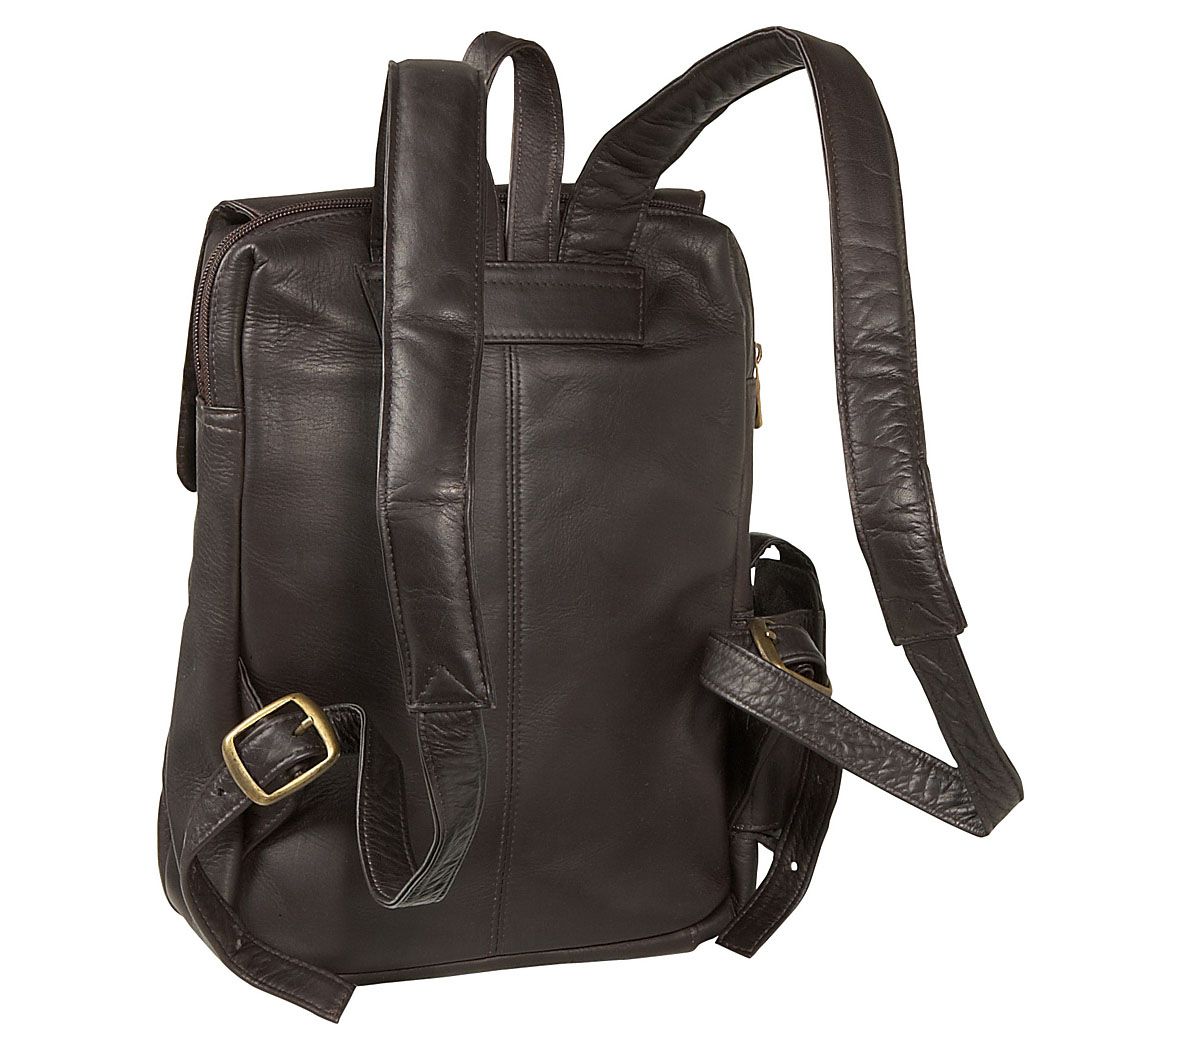 Le Donne Leather Women's Tech Friendly Backpack - QVC.com